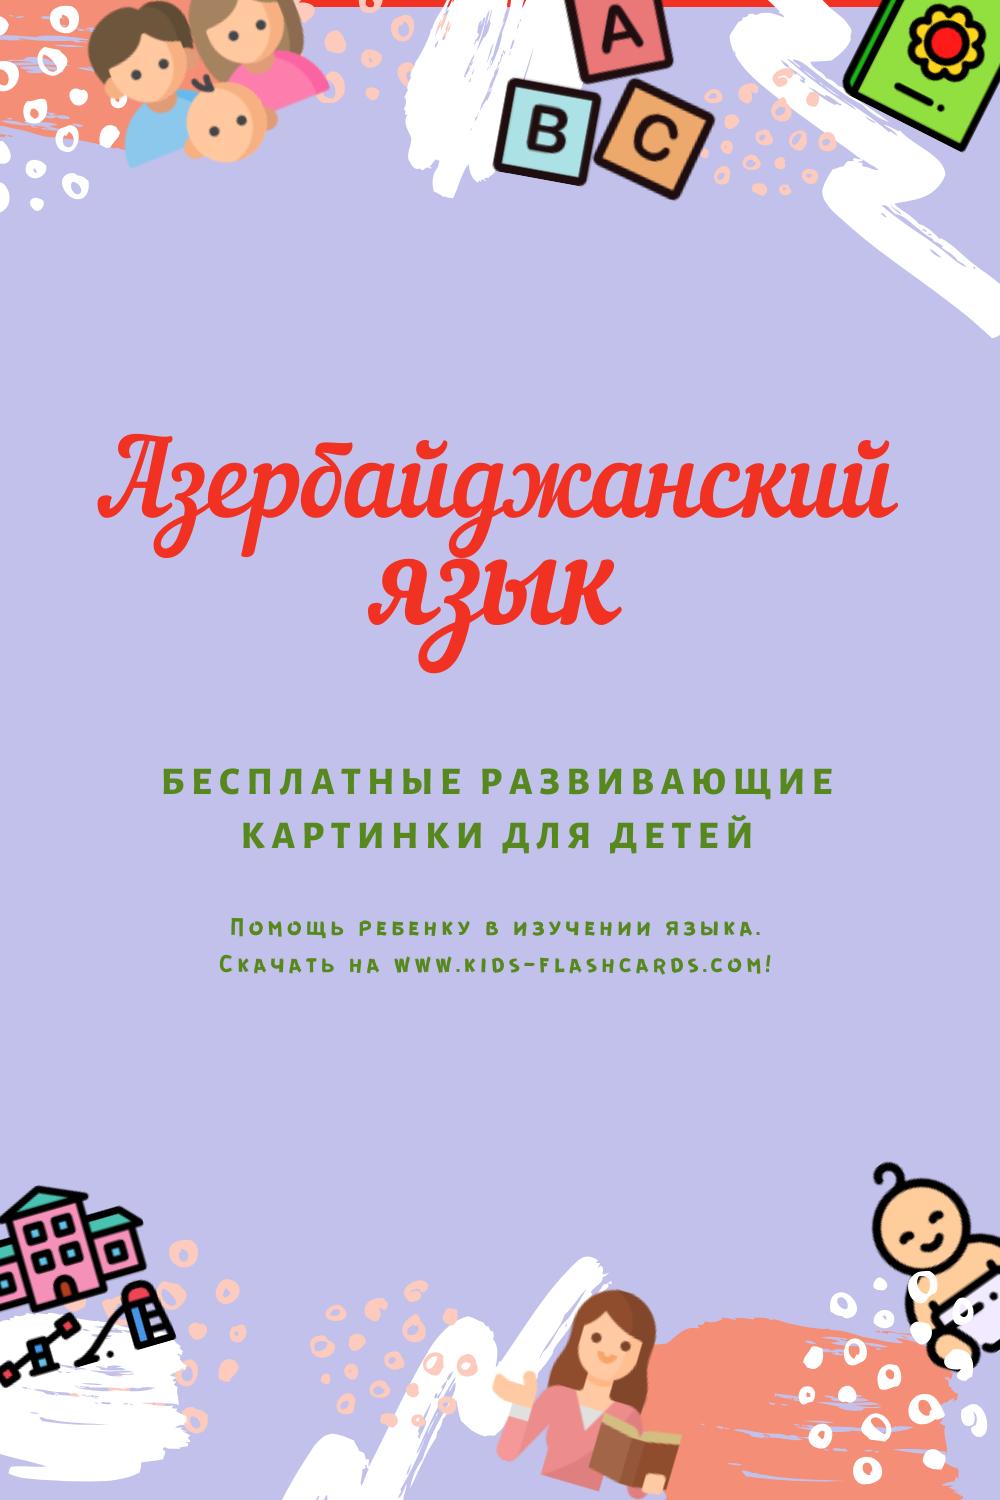 Азербайджанский язык - бесплатные материалы для печати